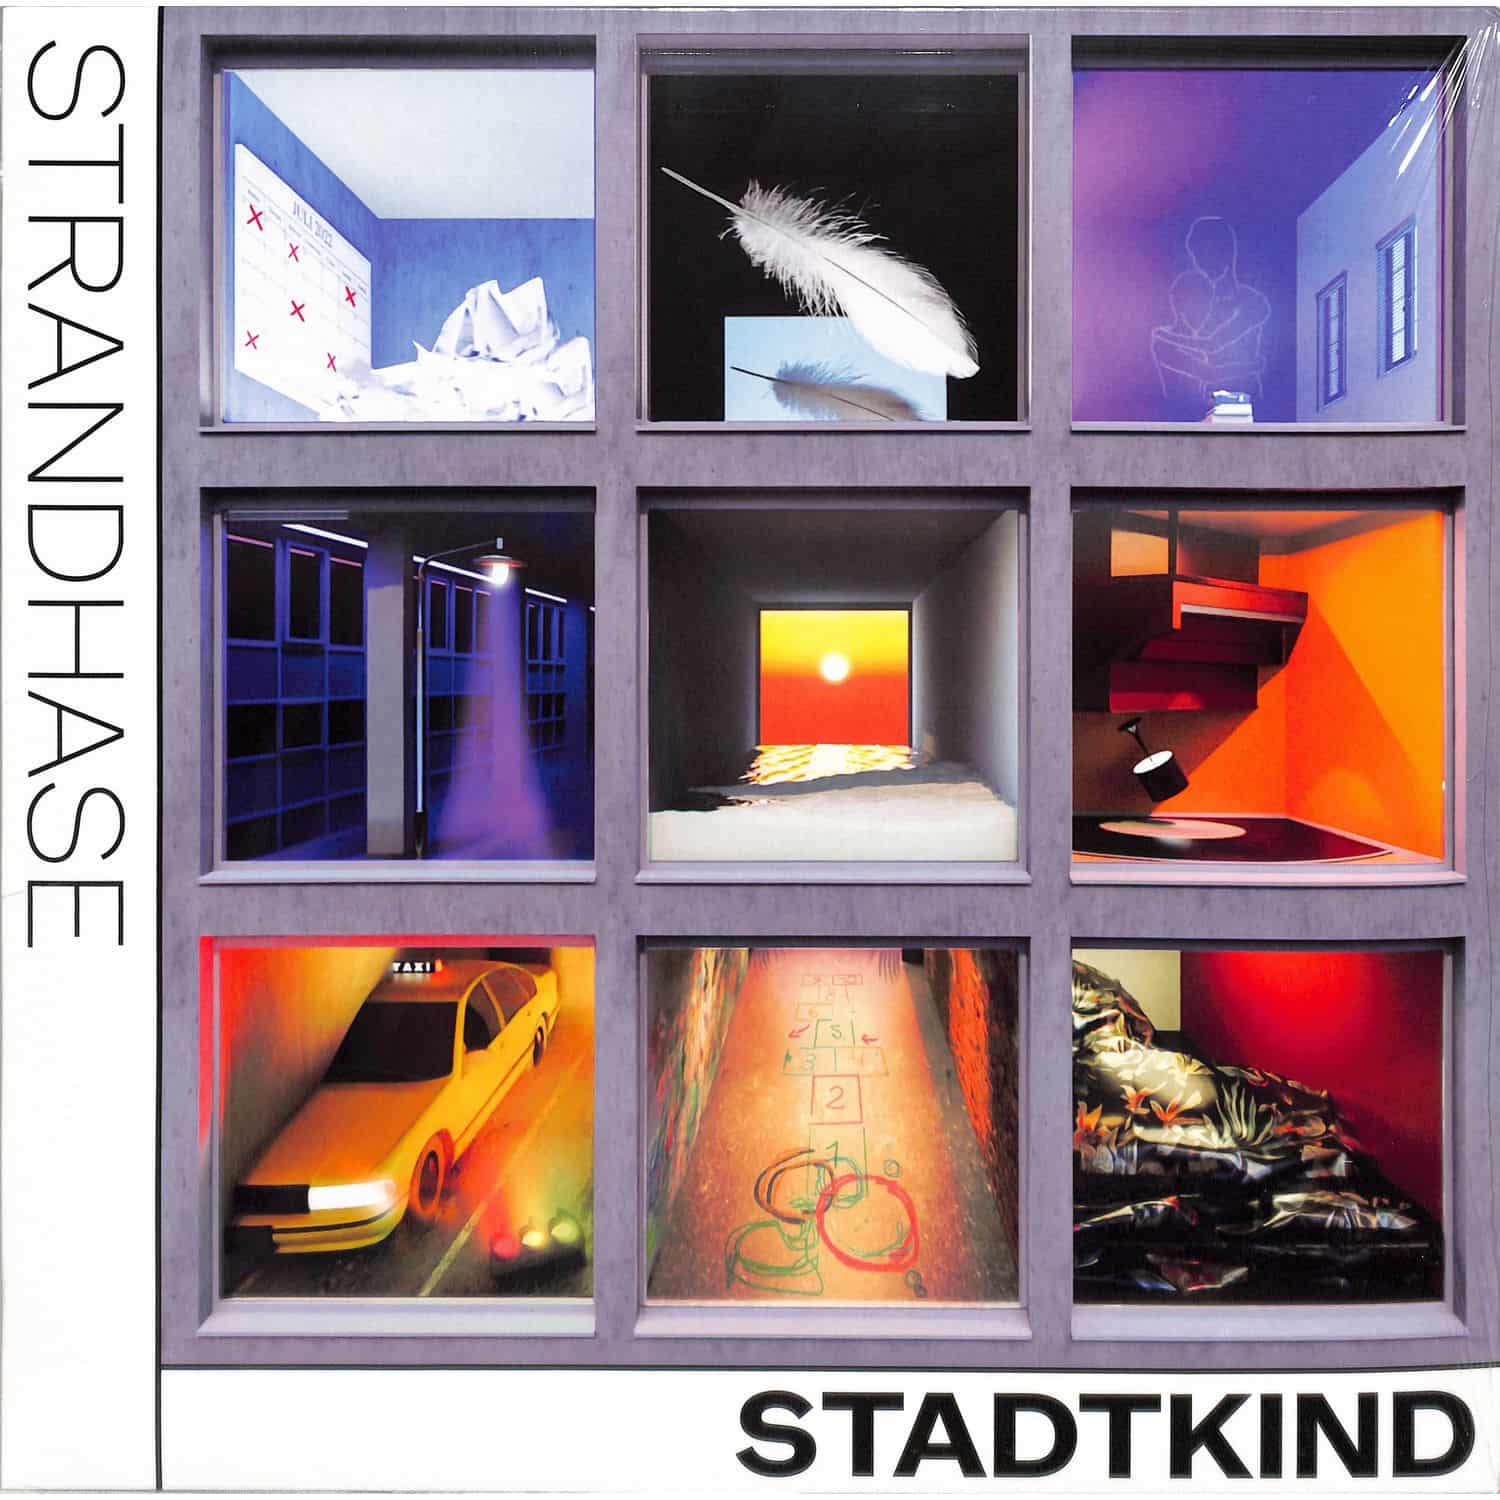 Strandhase - STADTKIND 